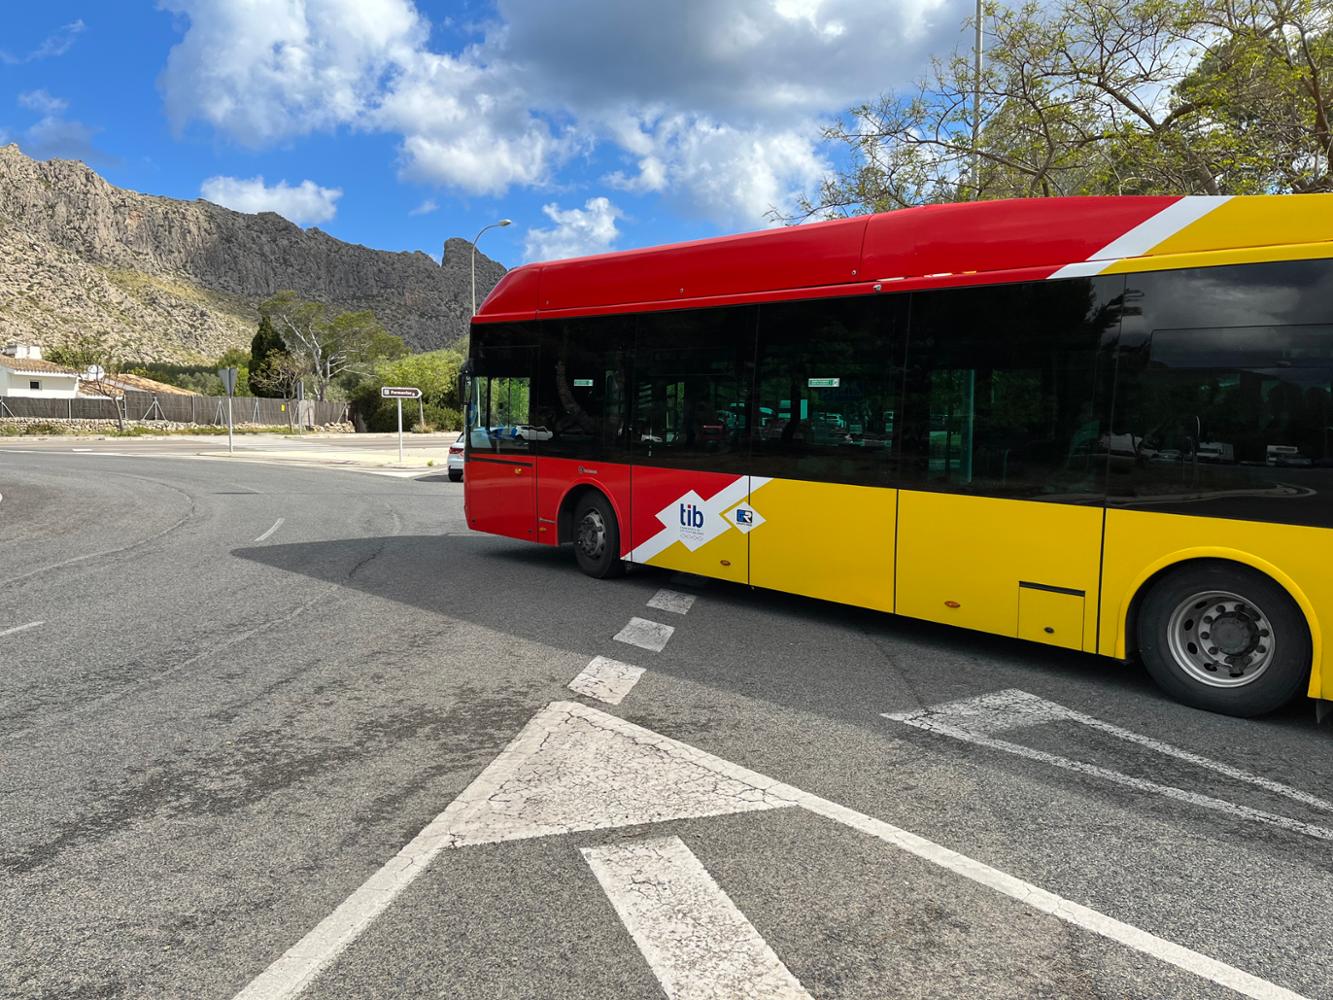 L'1 de juny comencen les restriccions al trànsit a la península de Formentor